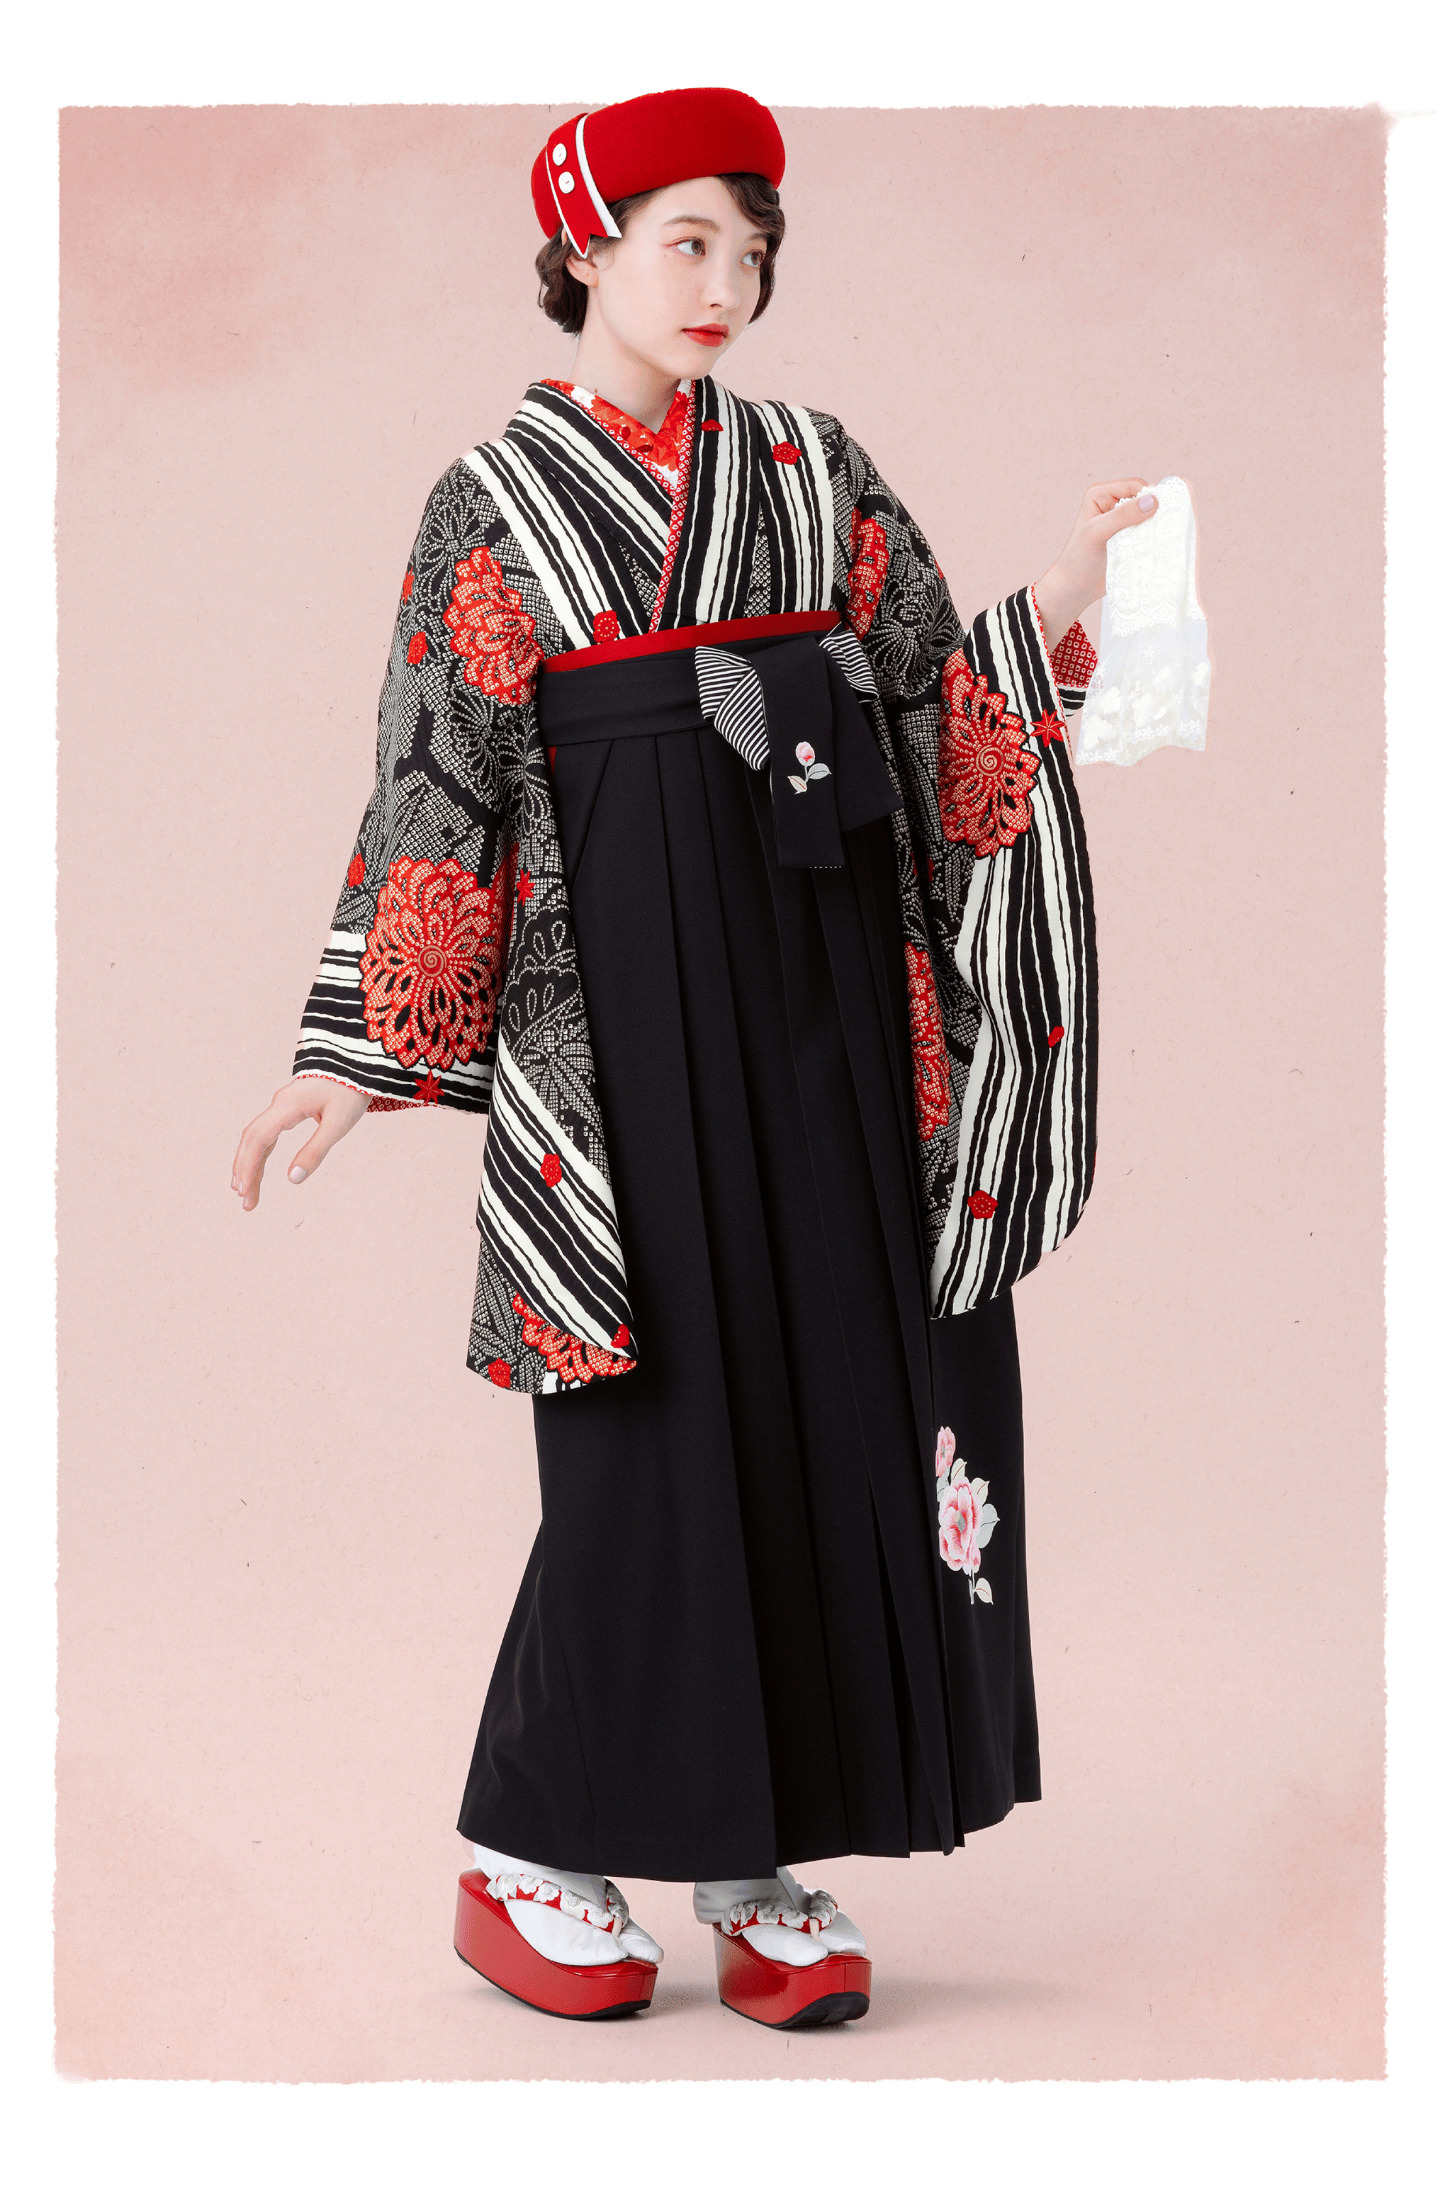 モダンアンテナブランドの、黒地にストライプの二尺袖と、黒の袴を合わせた全身写真